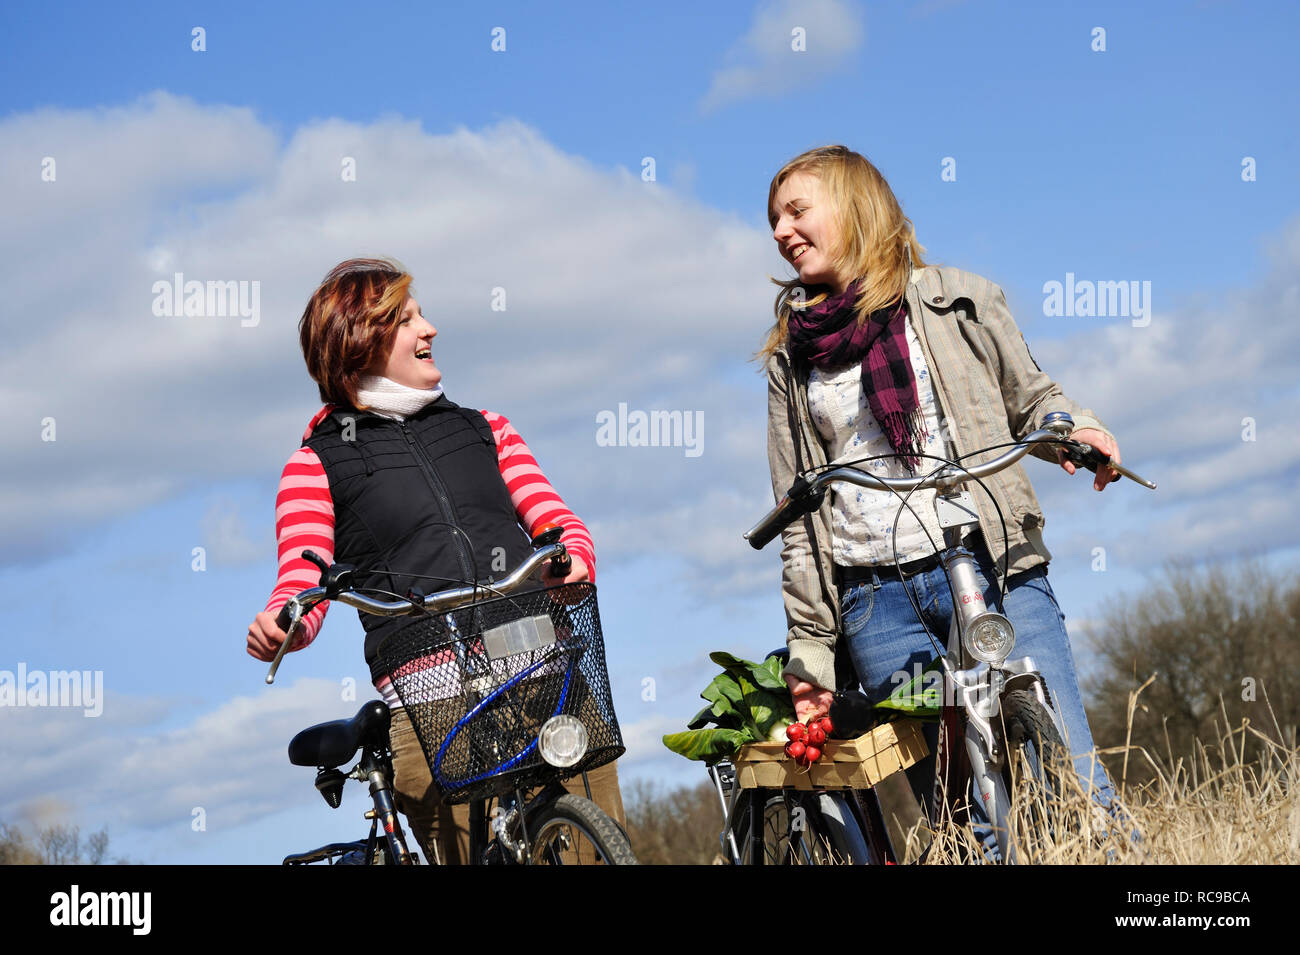 Zwei Frauen mit Fahrrad und jungendliche Gemüsekorb - junges Gemüse | deux jeunes femmes avec leur vélo et un panier de légumes Banque D'Images